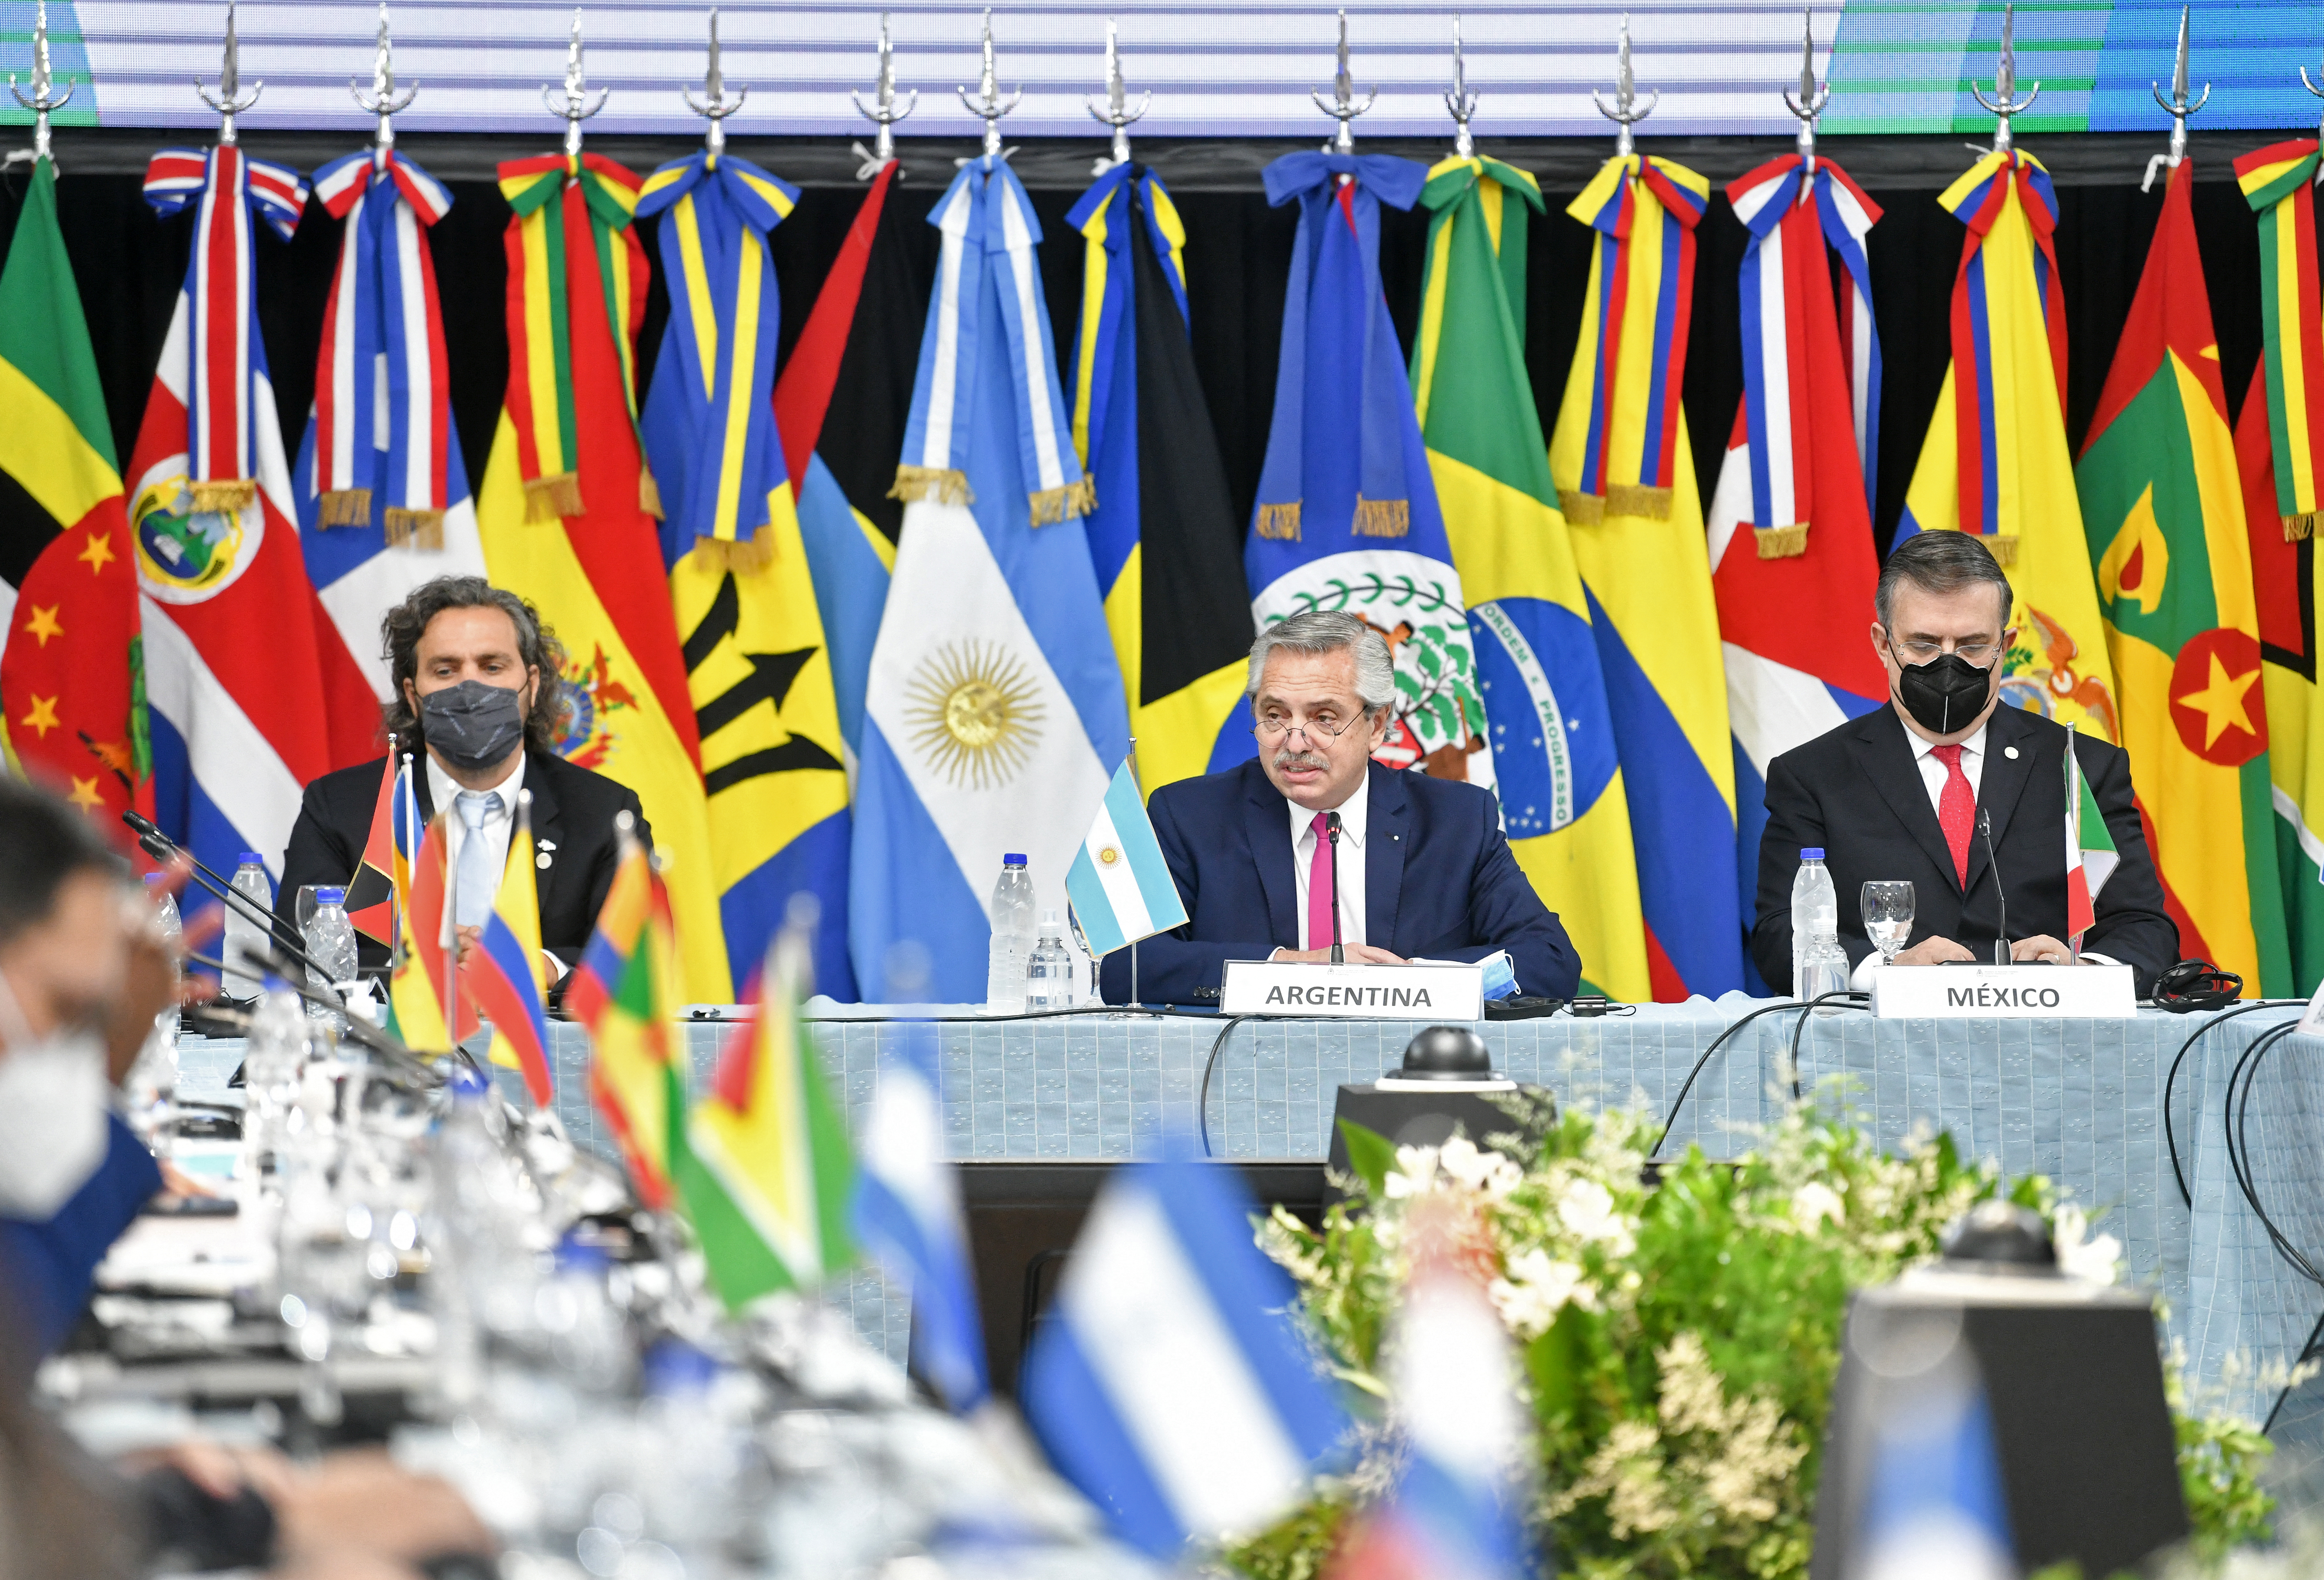 El presidente Alberto Fernández encabeza una cumbre de la CELAC. Nicaragüa cuestionó el rol de Argentina por el caso del avión venezolano (Presidencia/ AFP)